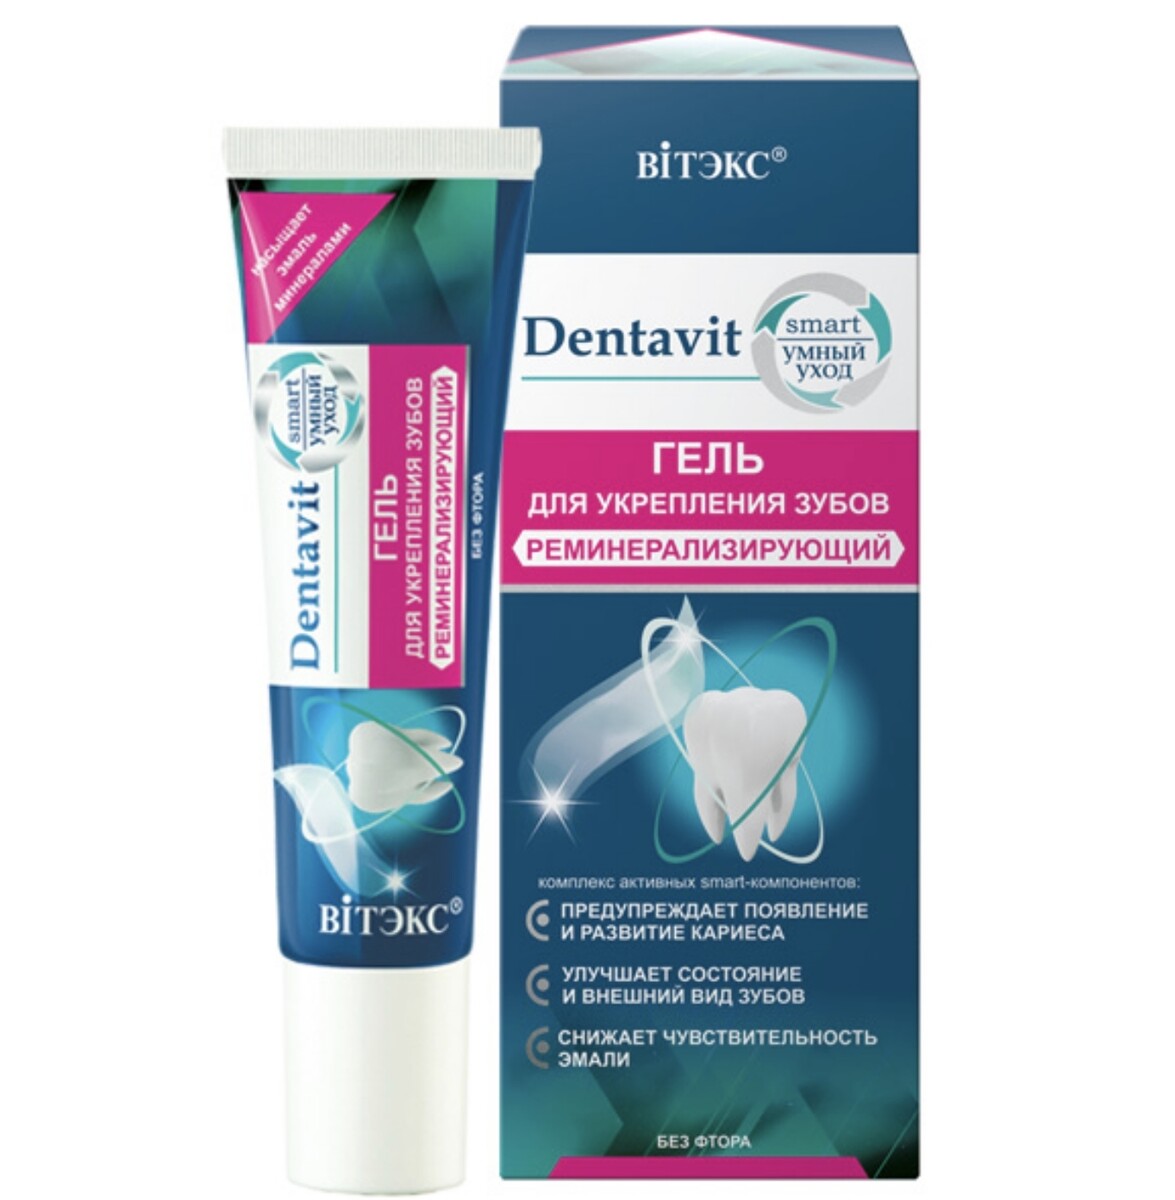 Dentavit-smart гель для укрепления зубов реминерализирующий (без фтора) 30г (без коробки)